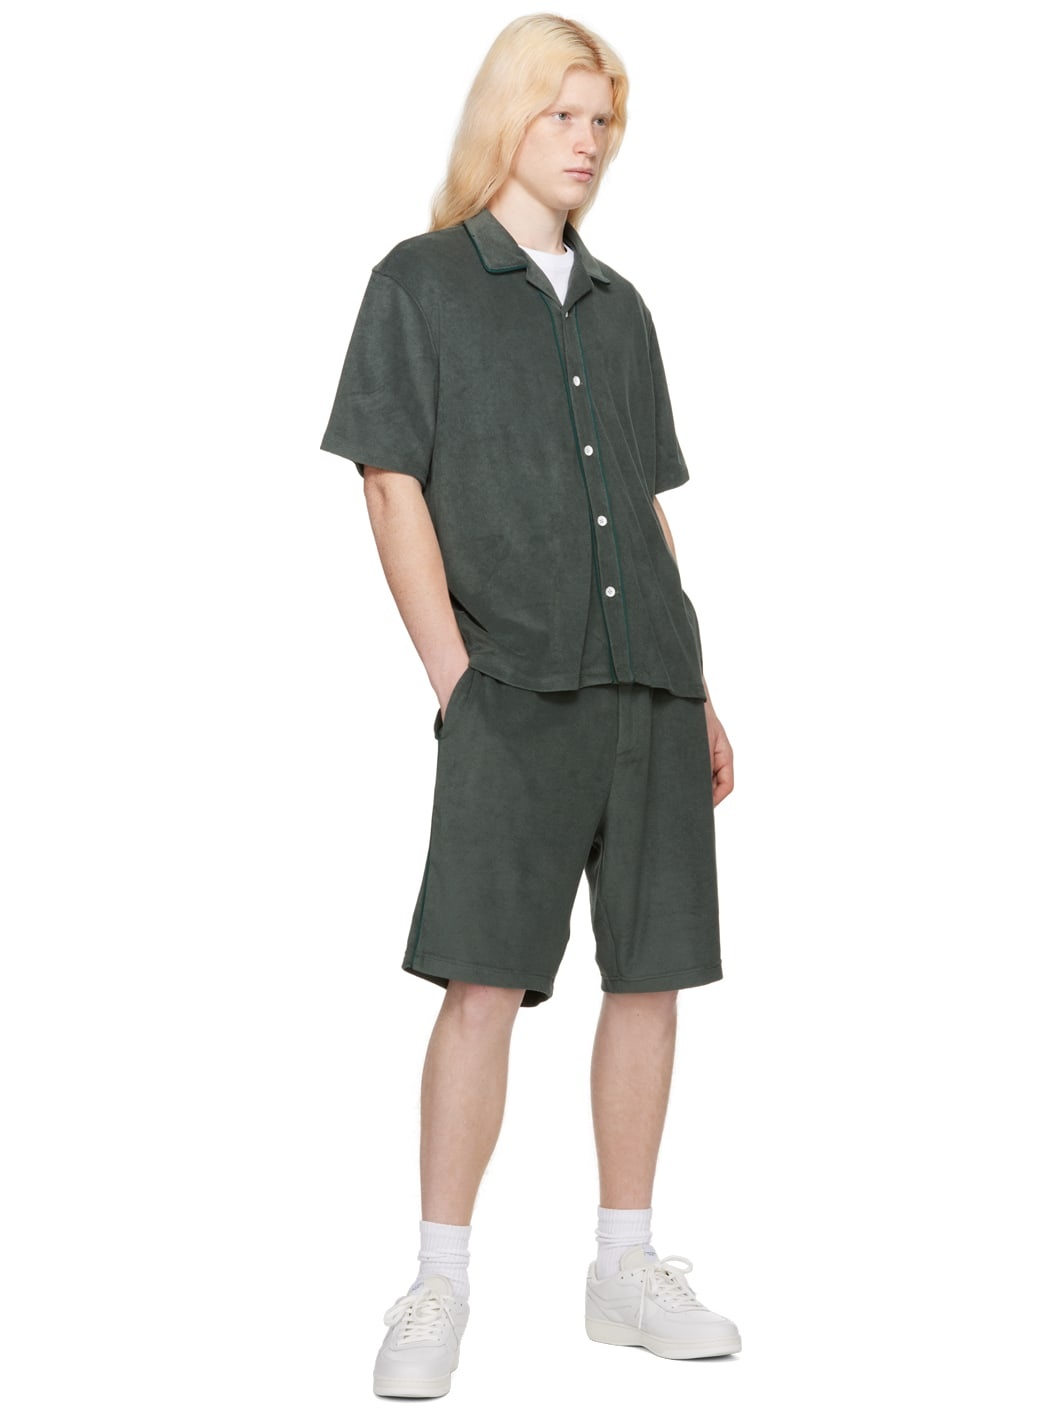 Green Piping Shorts - 4